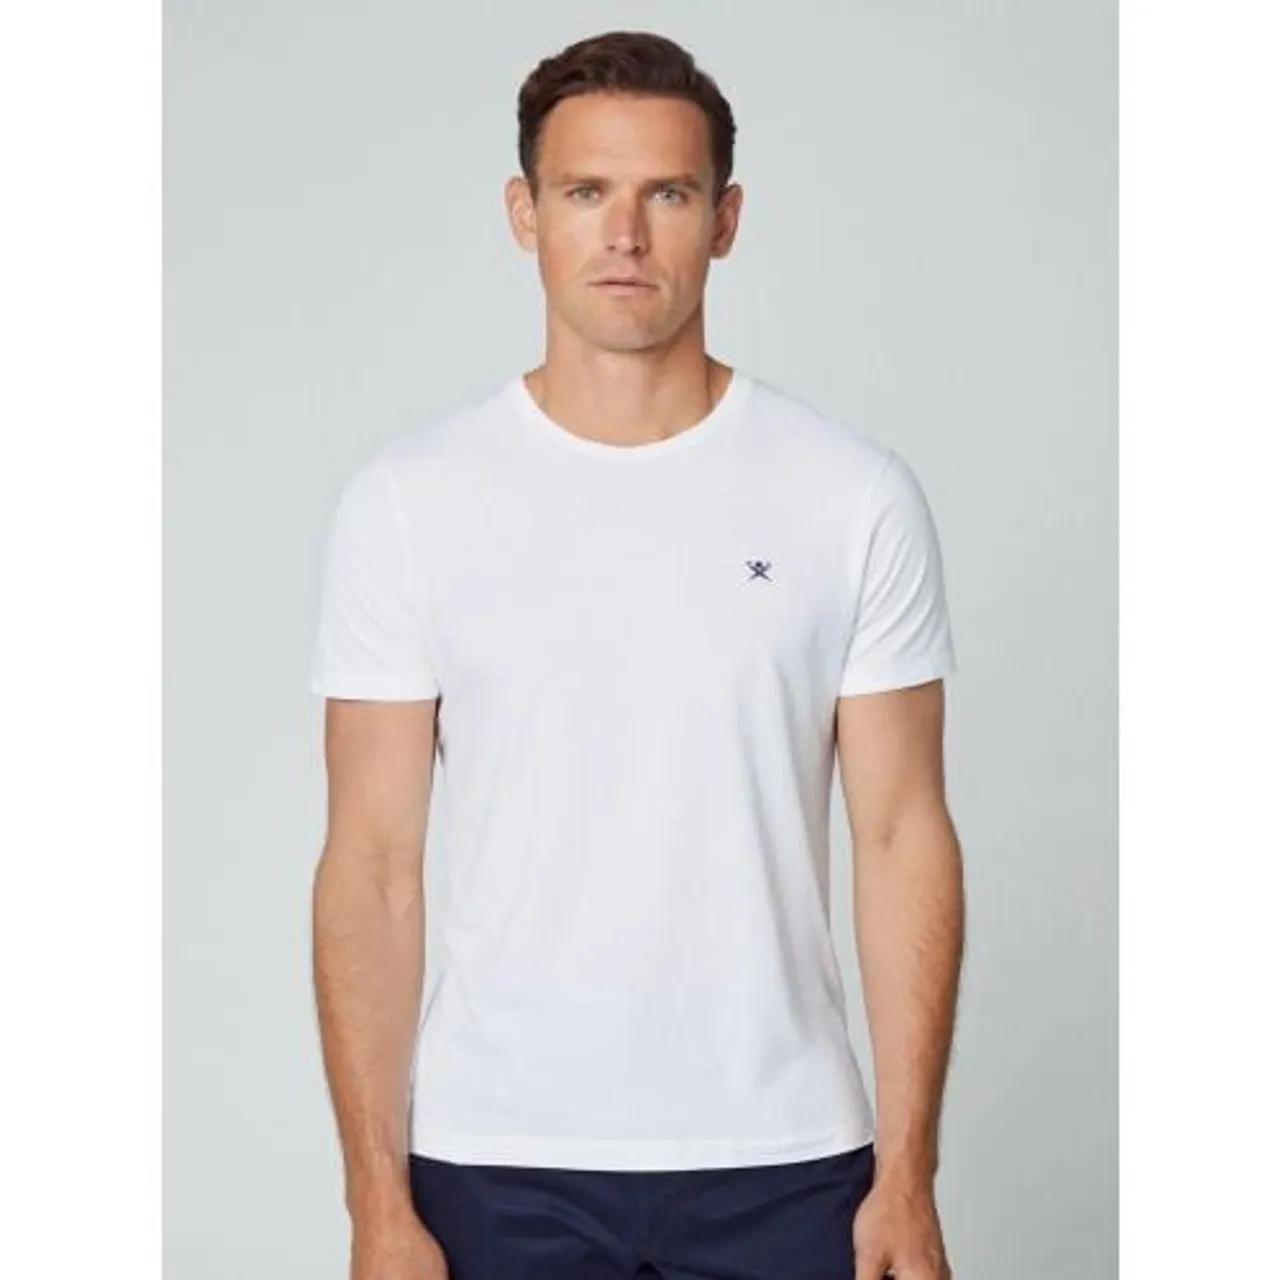 Hackett Mens White Classic T-Shirt